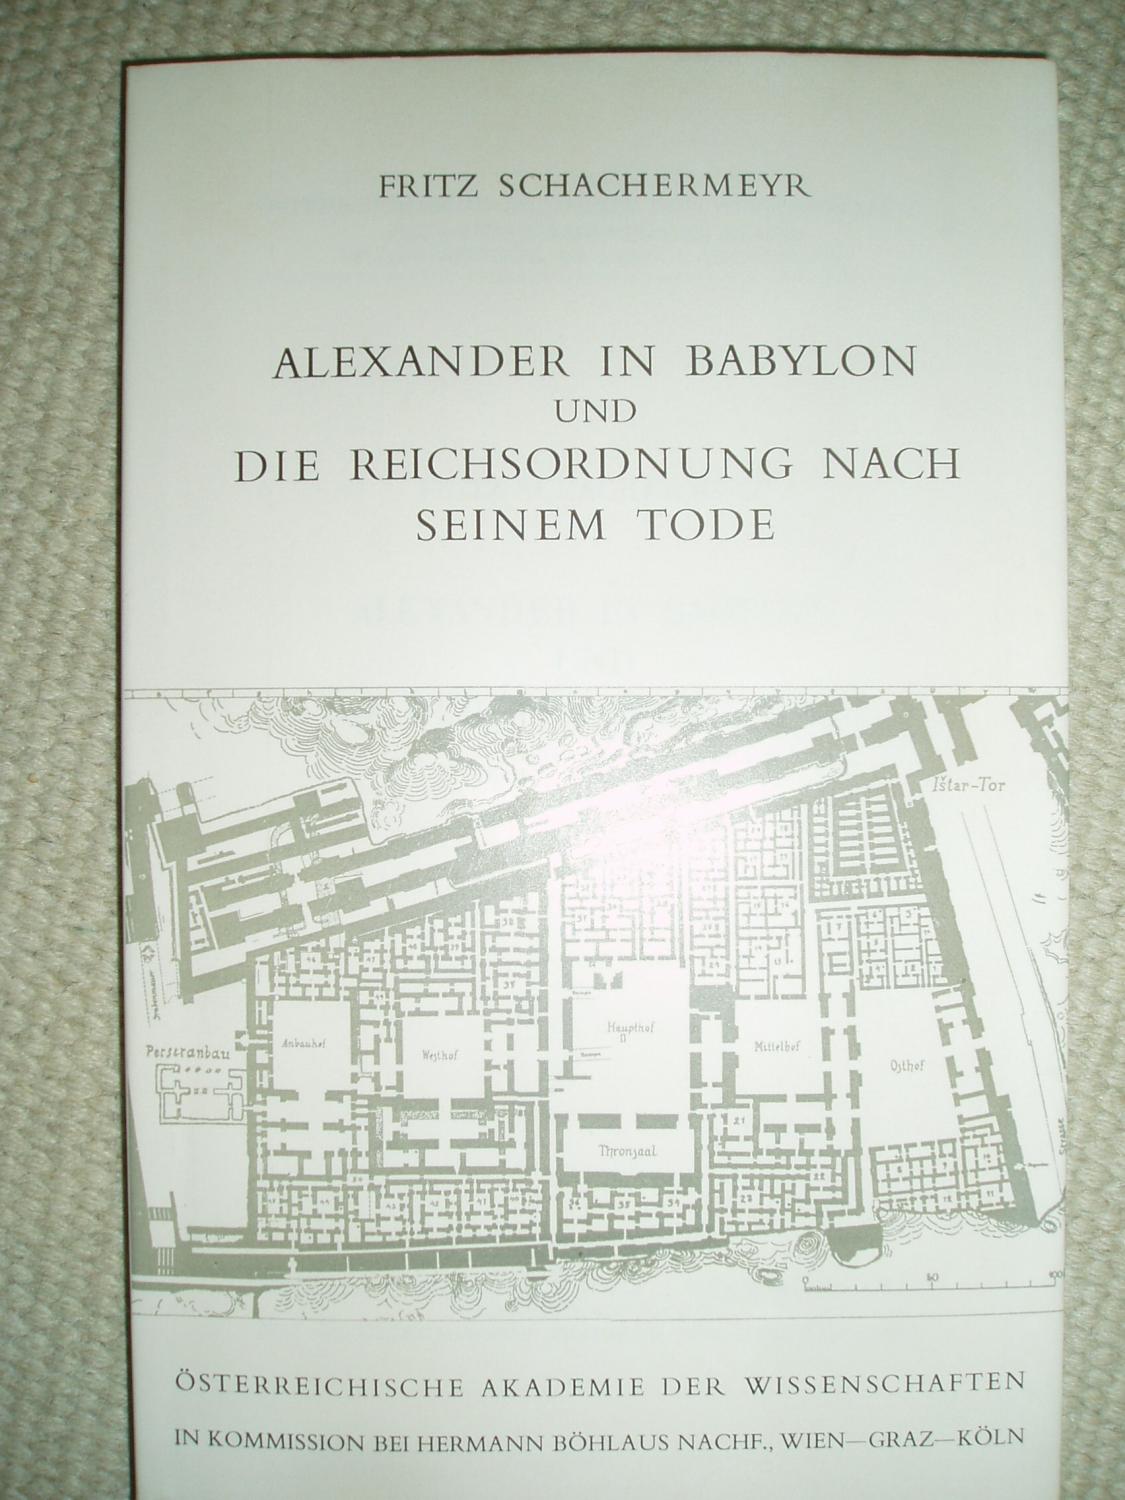 Alexander in Babylon und die Reichsordnung nach seinem Tode - Schachermeyr, Fritz [1895-1987]